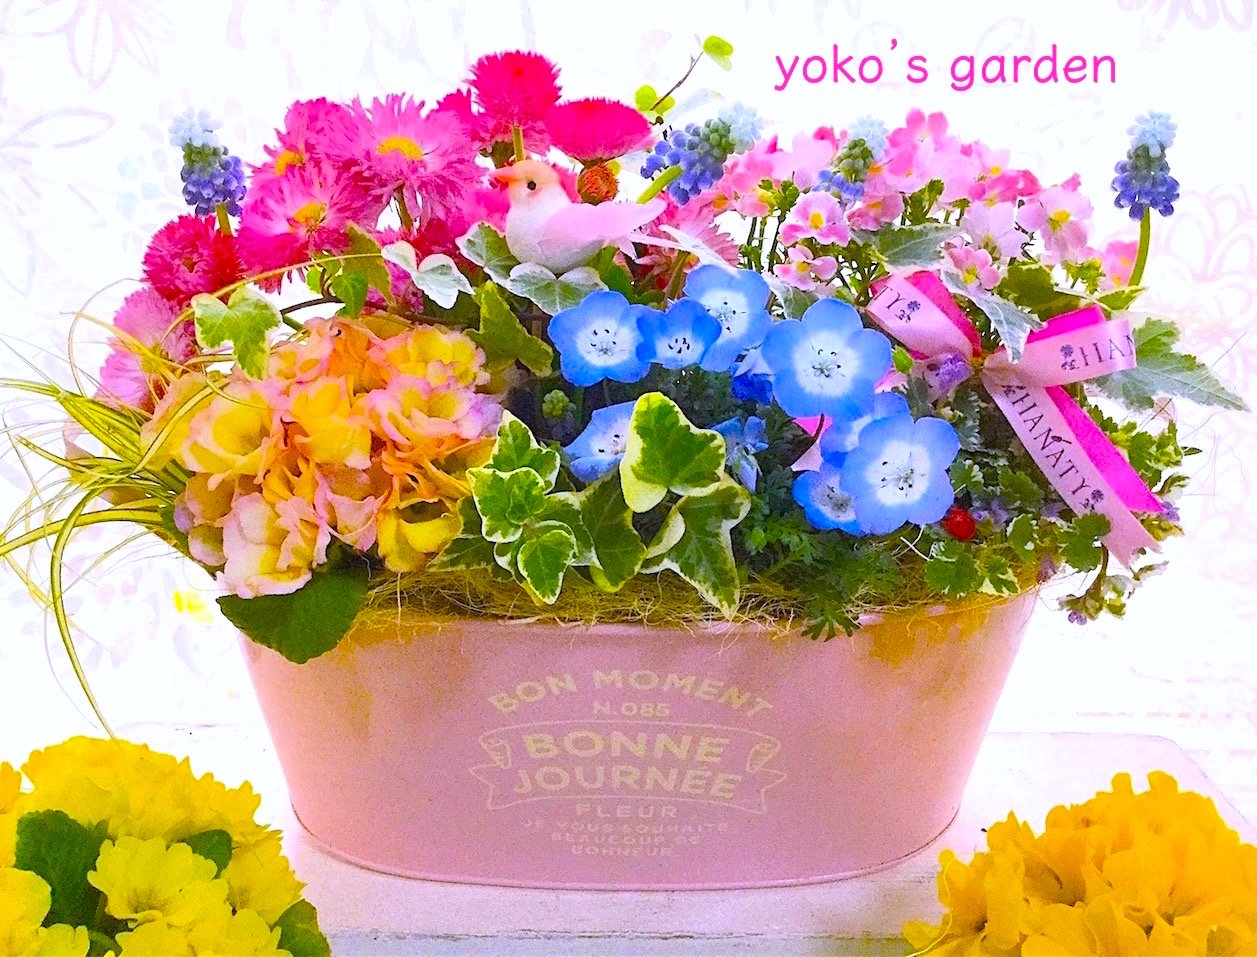 花 プレゼント 人気 幸せを願うサムシングブルーのムスカリ花鉢植えギフト 祝福バード付き 花のプレゼントは人気の寄せ植え 鉢植えギフト通販 Yoko S Garden